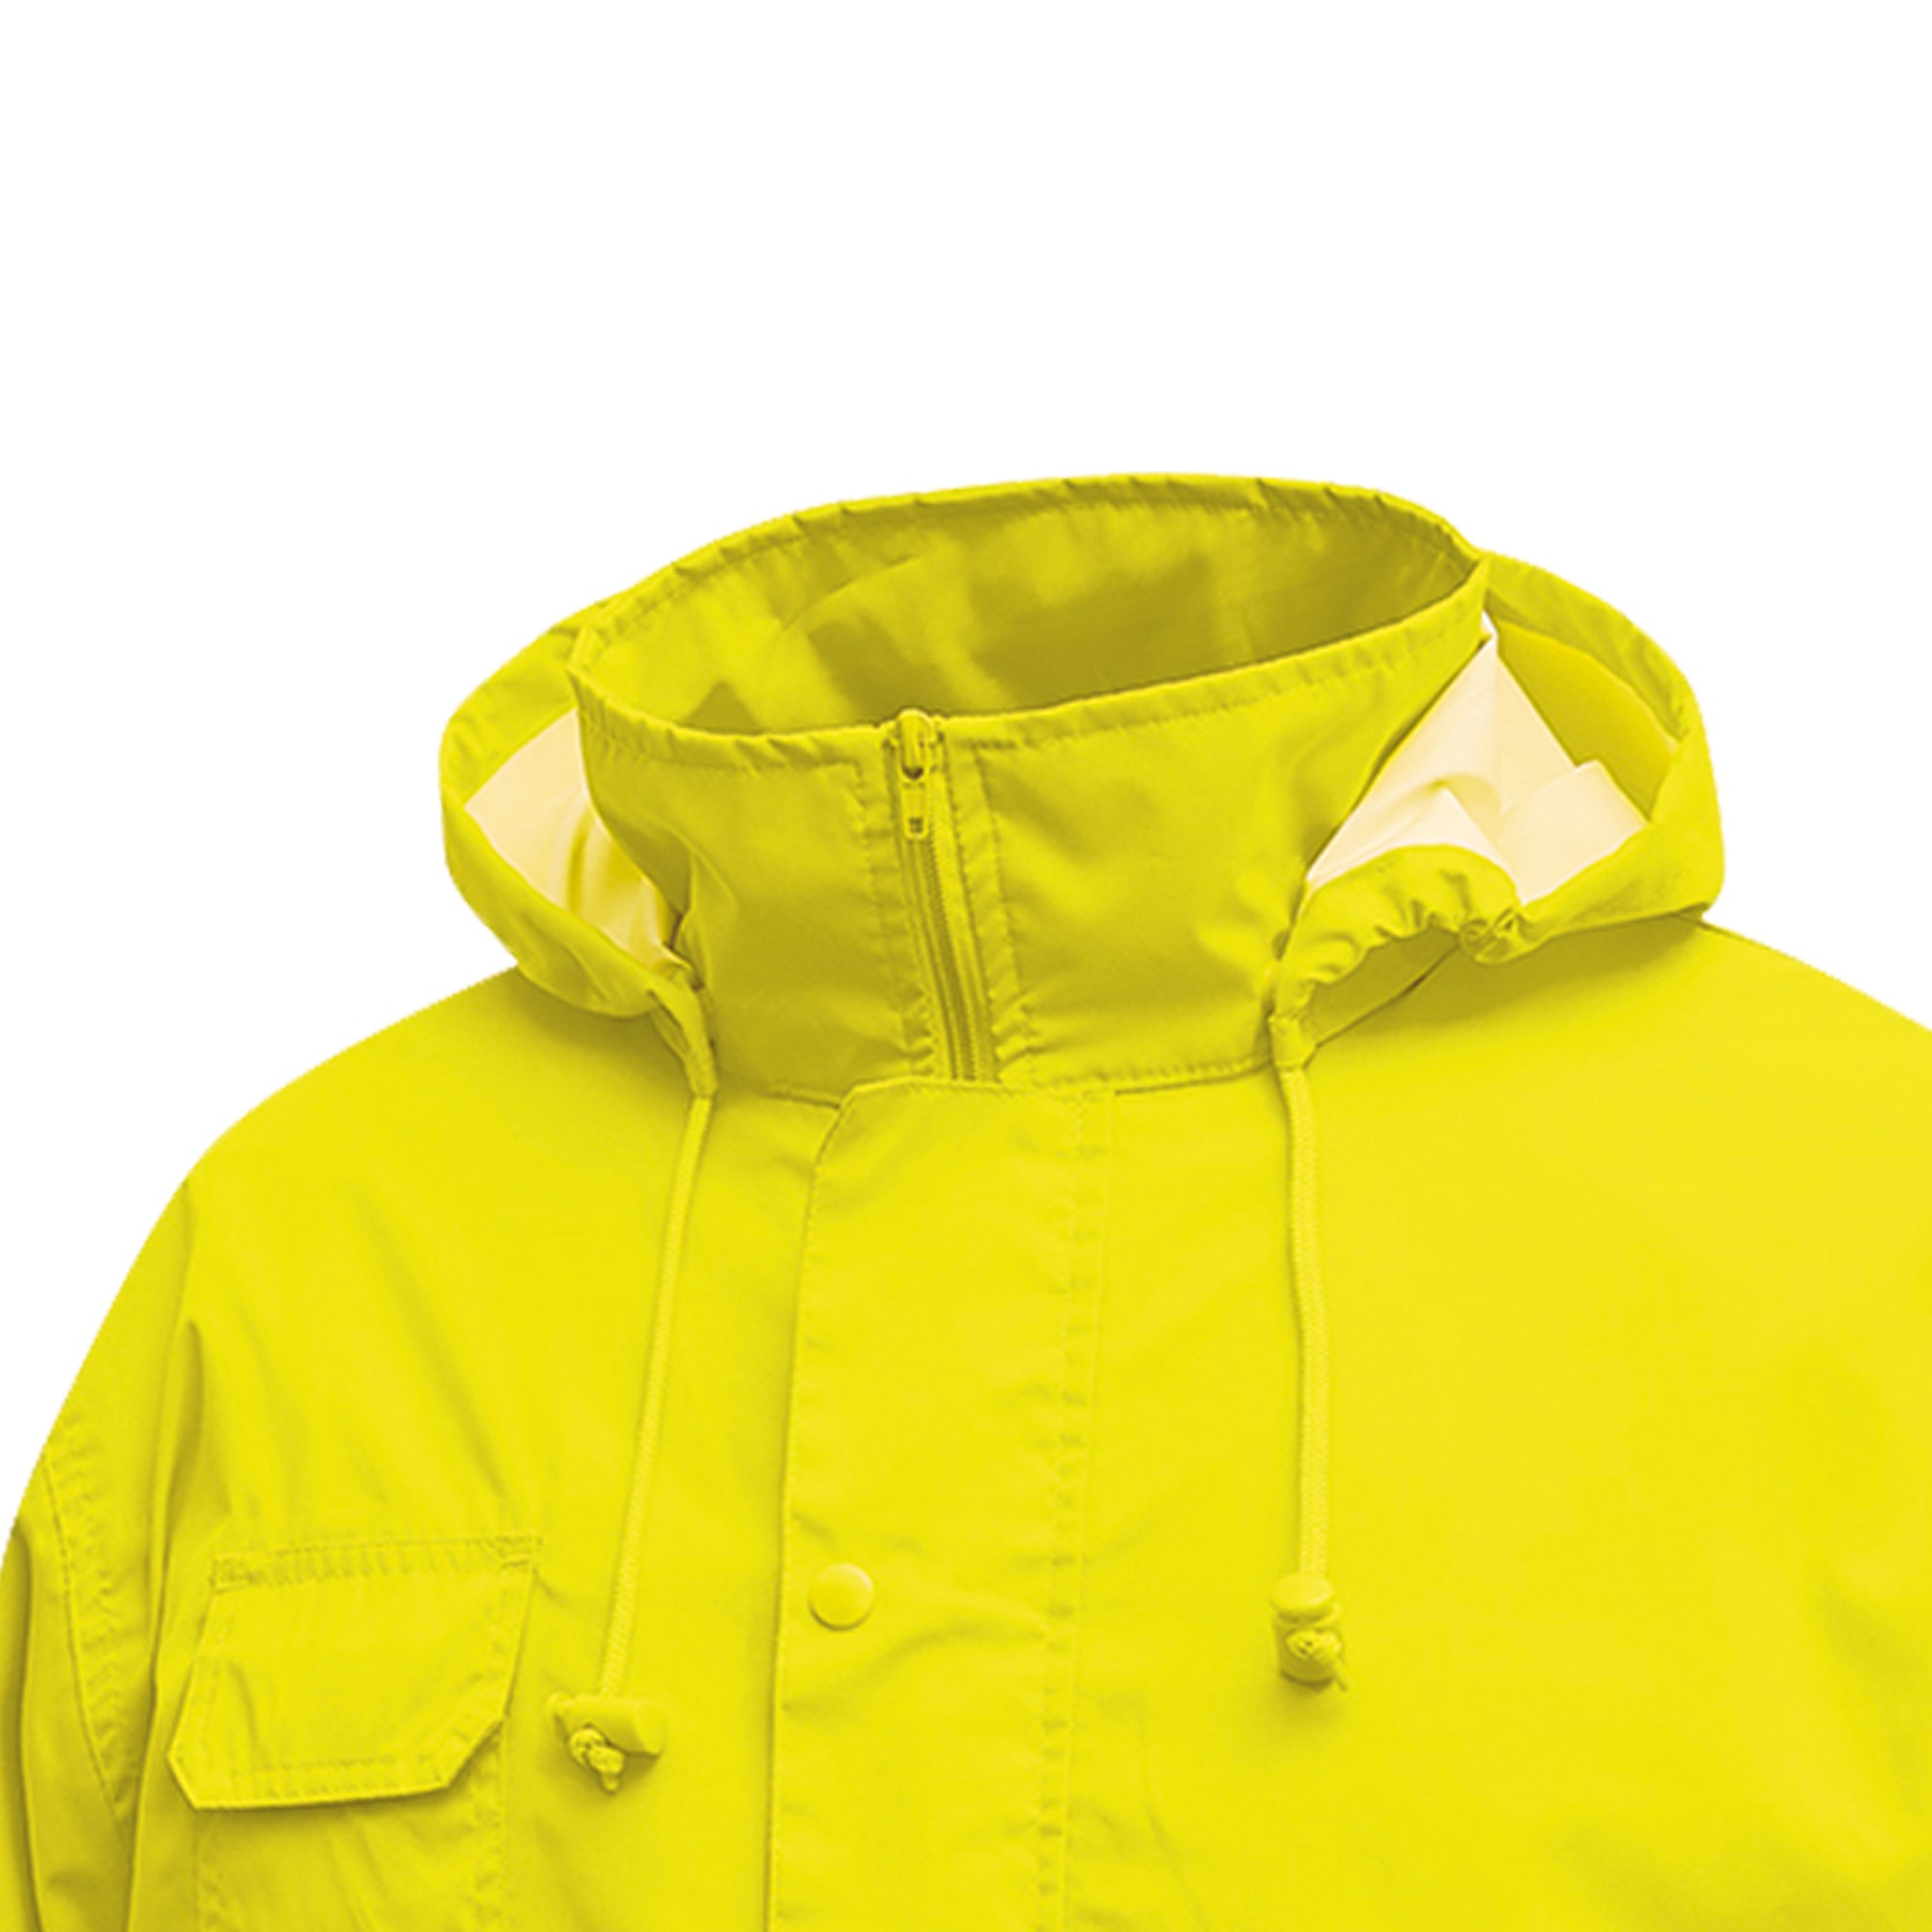 u-power-completo-antipioggia-alta-visibilita-cover-giallo-fluo-taglia-l